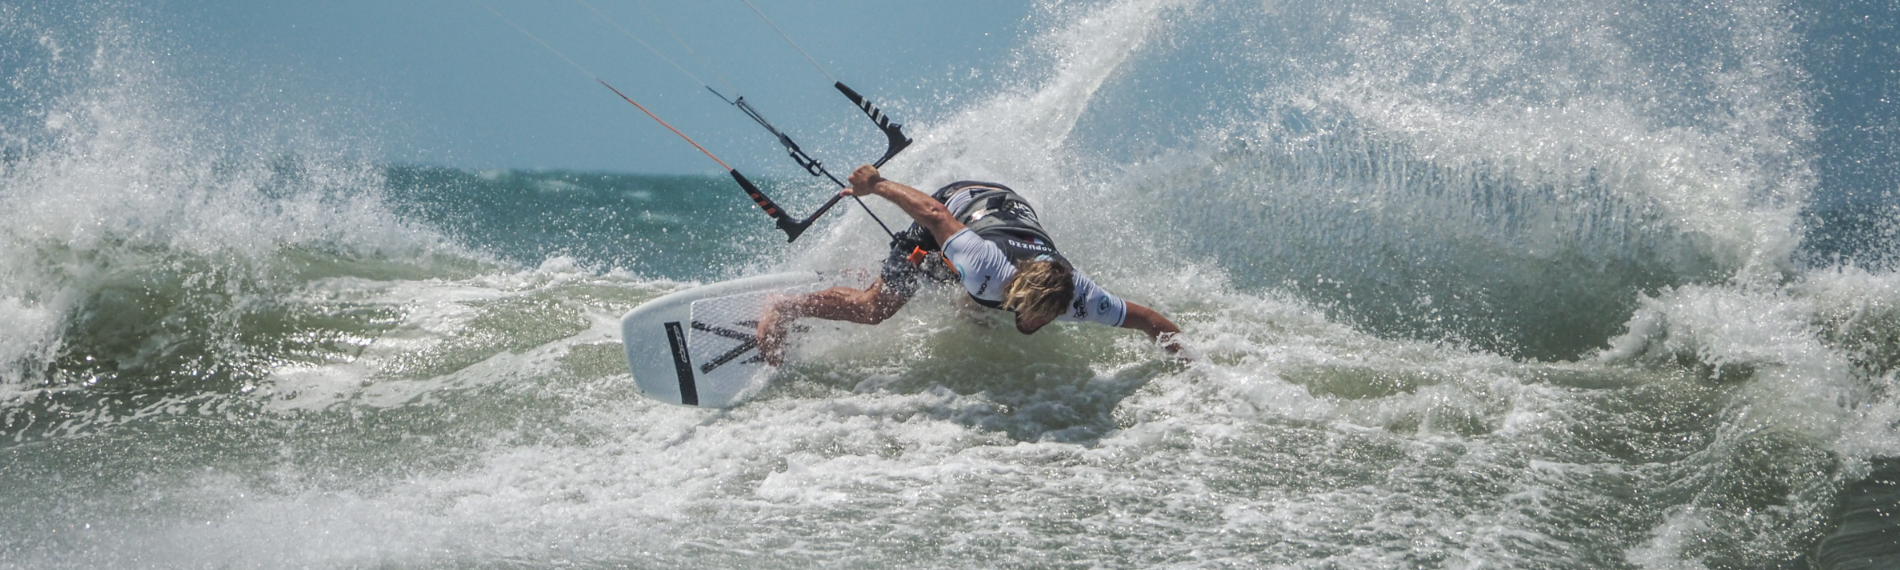 Kitesurfer gleitet in Maceio auf Wellen bei starkem Wind.